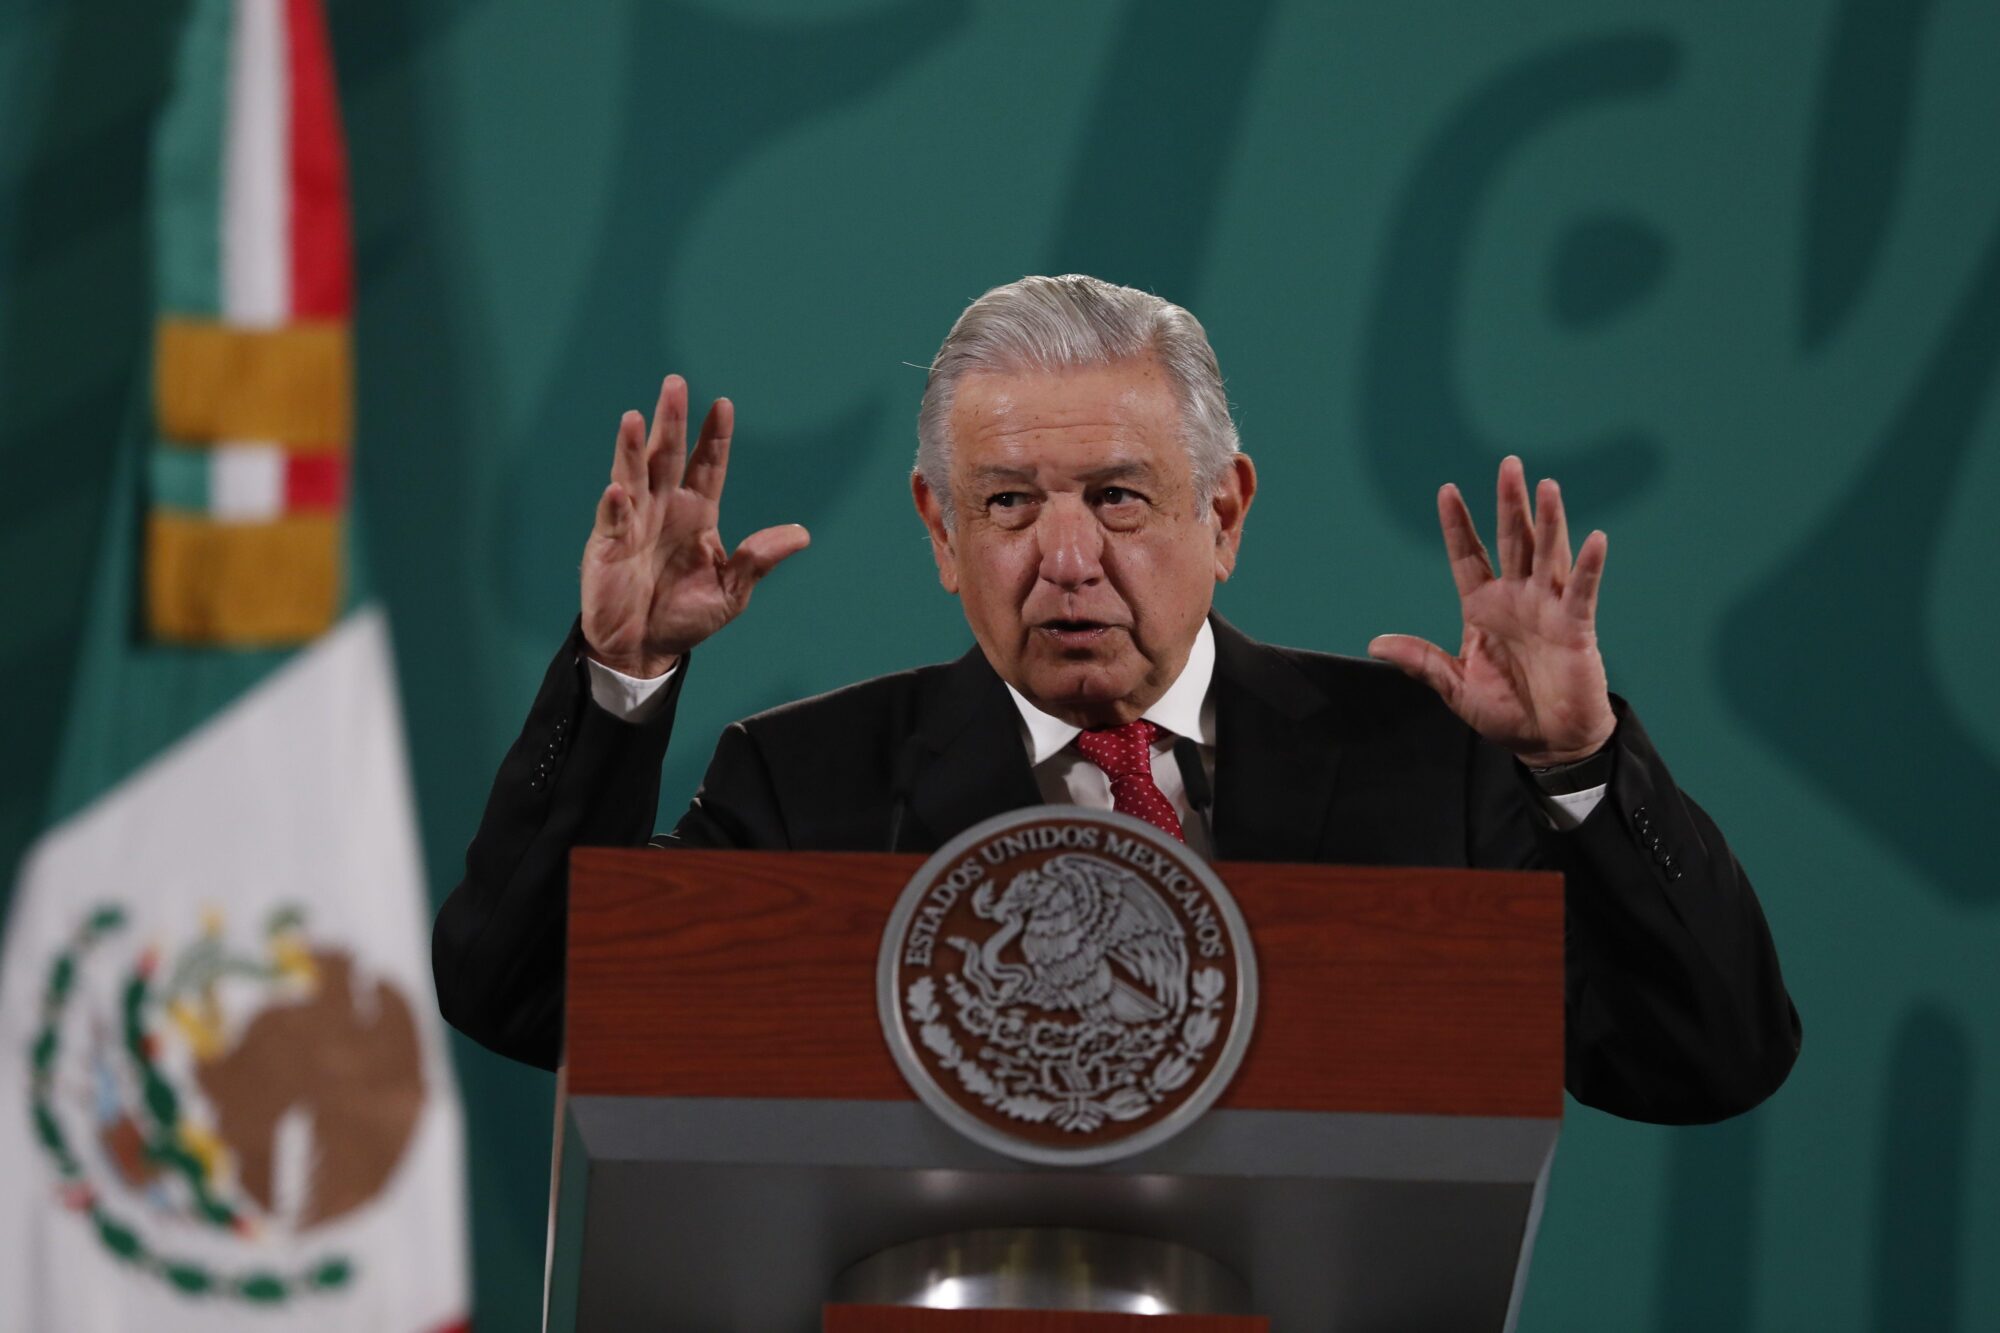 <p>El presidente mexicano Andrés Manuel López Obrador defiende su propuesta de reforma eléctrica en una conferencia de prensa este noviembre. Las nuevas reglas prohibirían más concesiones sobre la explotación de litio y le darían al gobierno más control sobre el recurso. (Imagen: Mario Guzman, EFE / Alamy)</p>